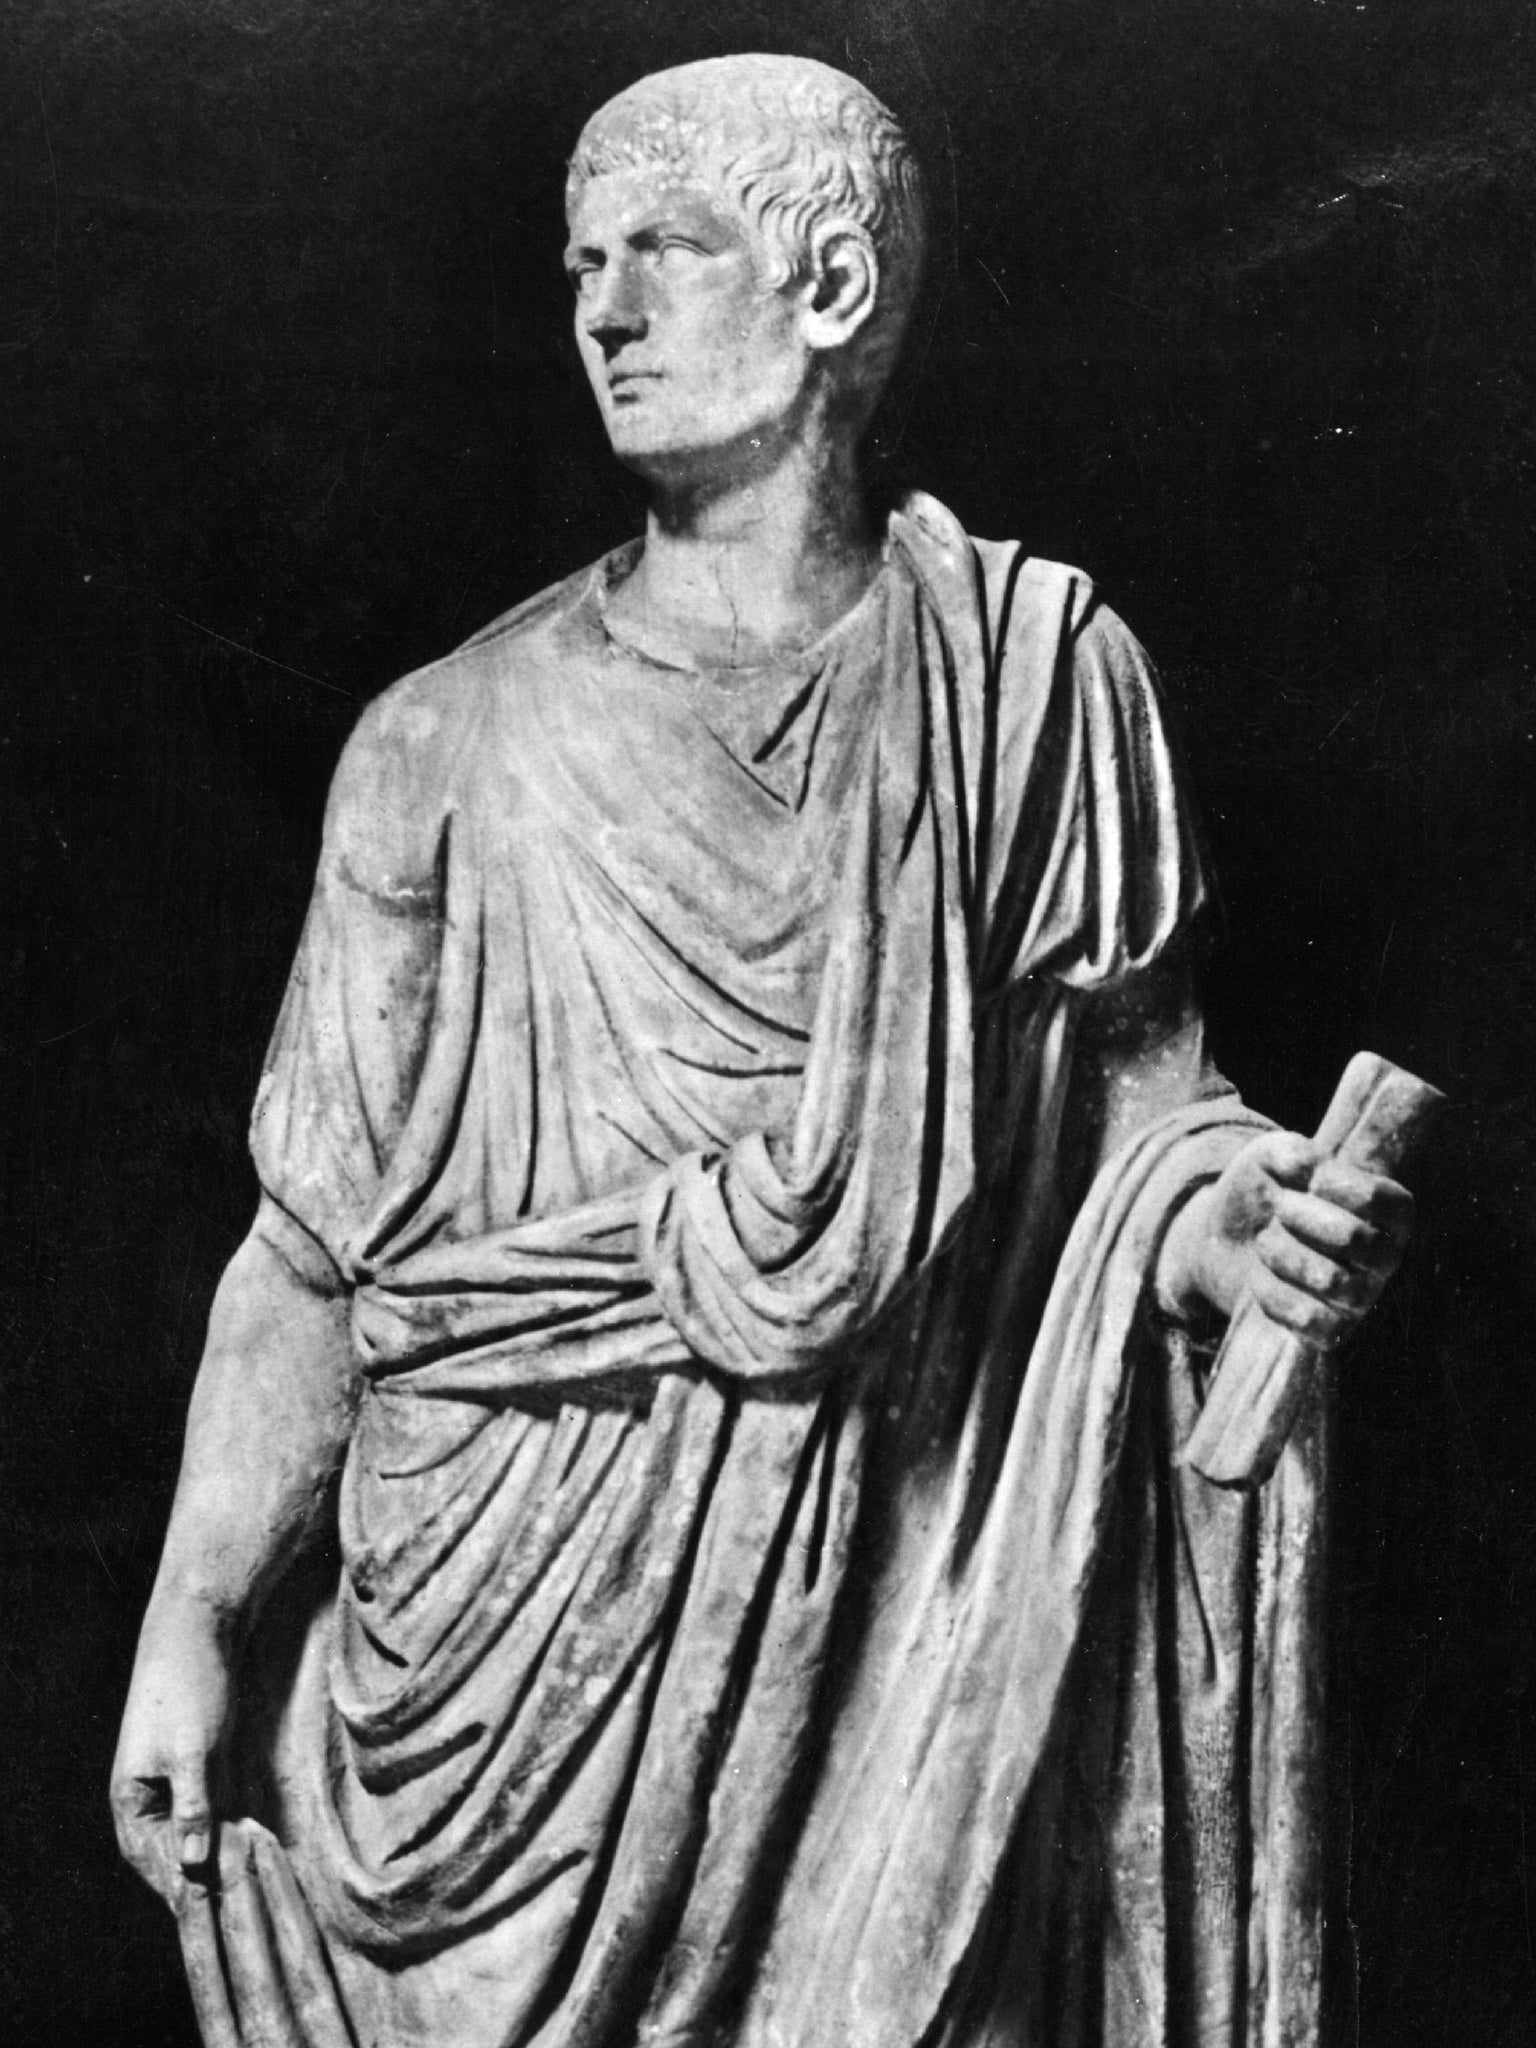 A statue of Roman Emperor Gaius Caesar Augustus Germanicus Caligula (12 - 41 AD), perhaps looking at his favourite horse